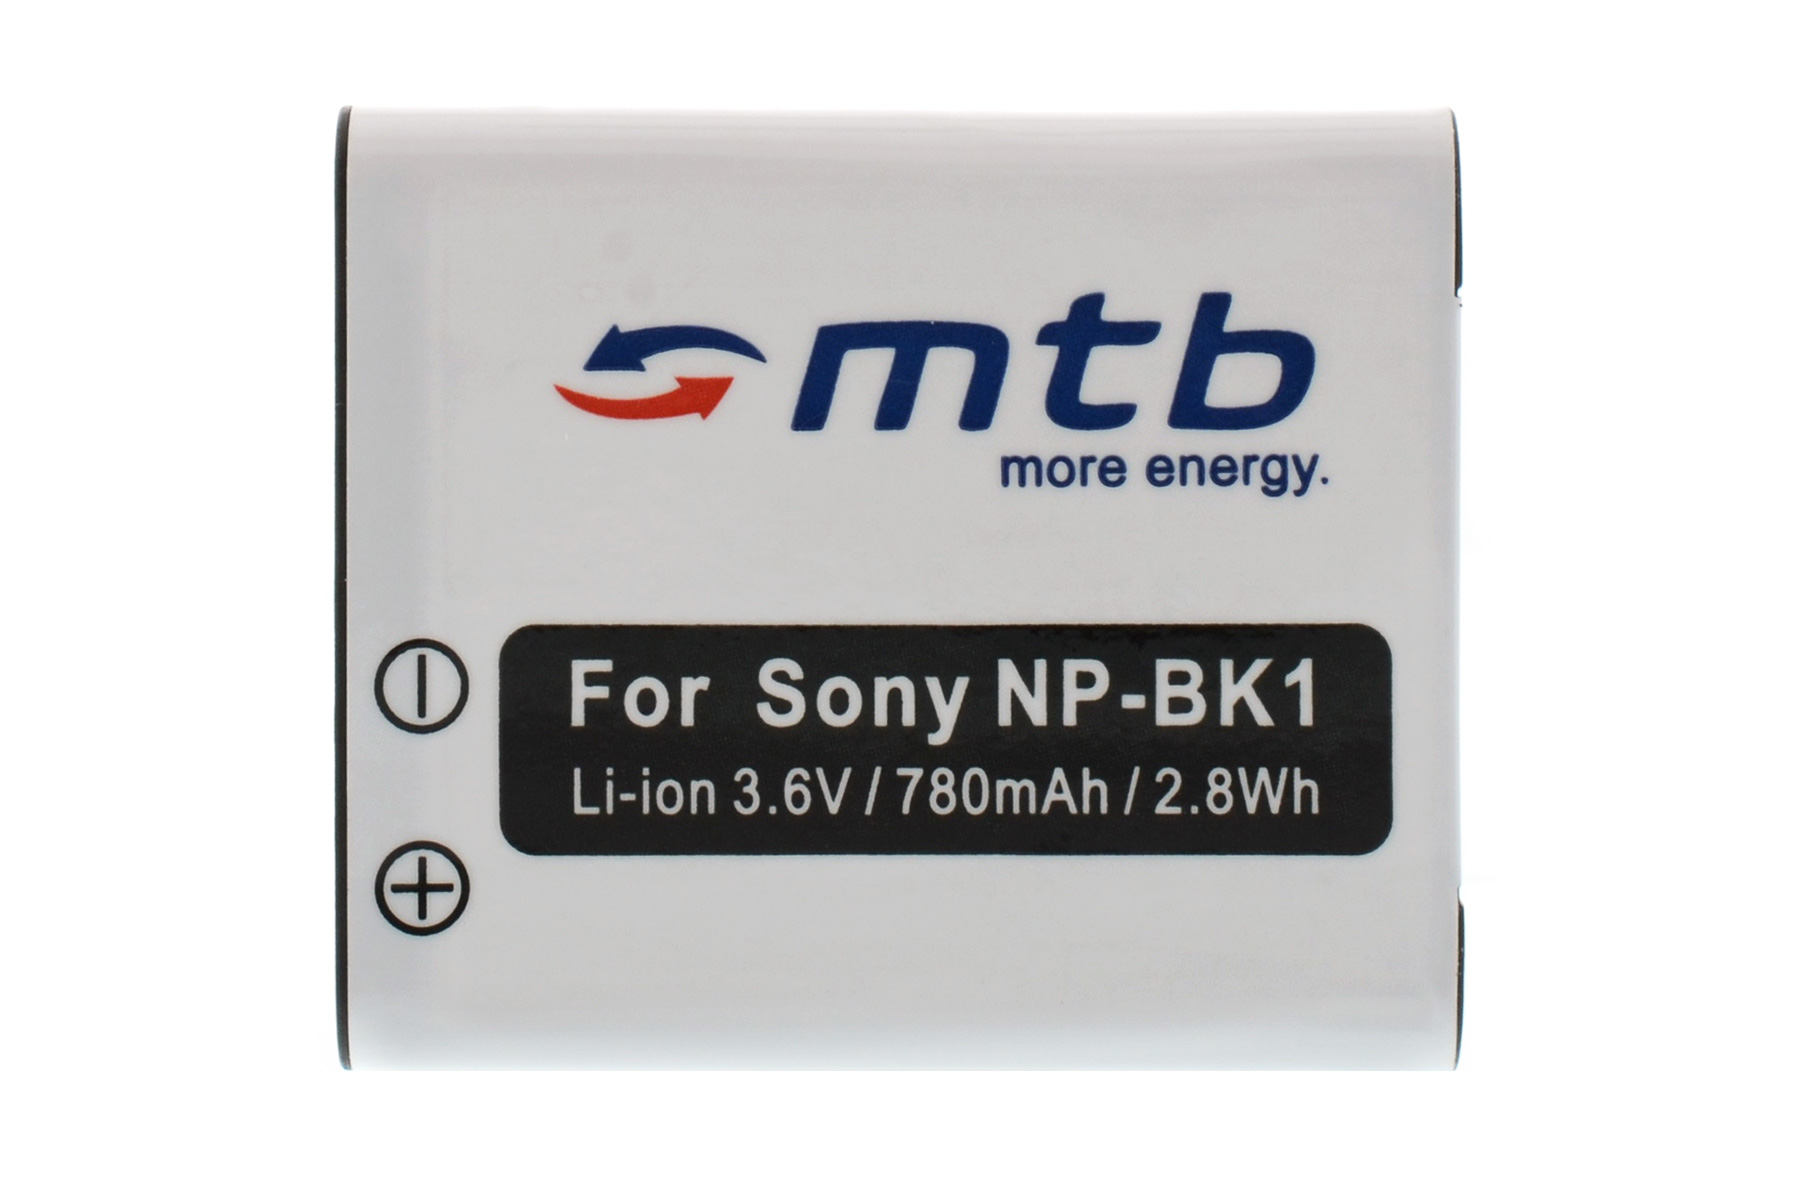 MTB MORE ENERGY BAT-361 NP-BK1 mAh Akku, Li-Ion, 780